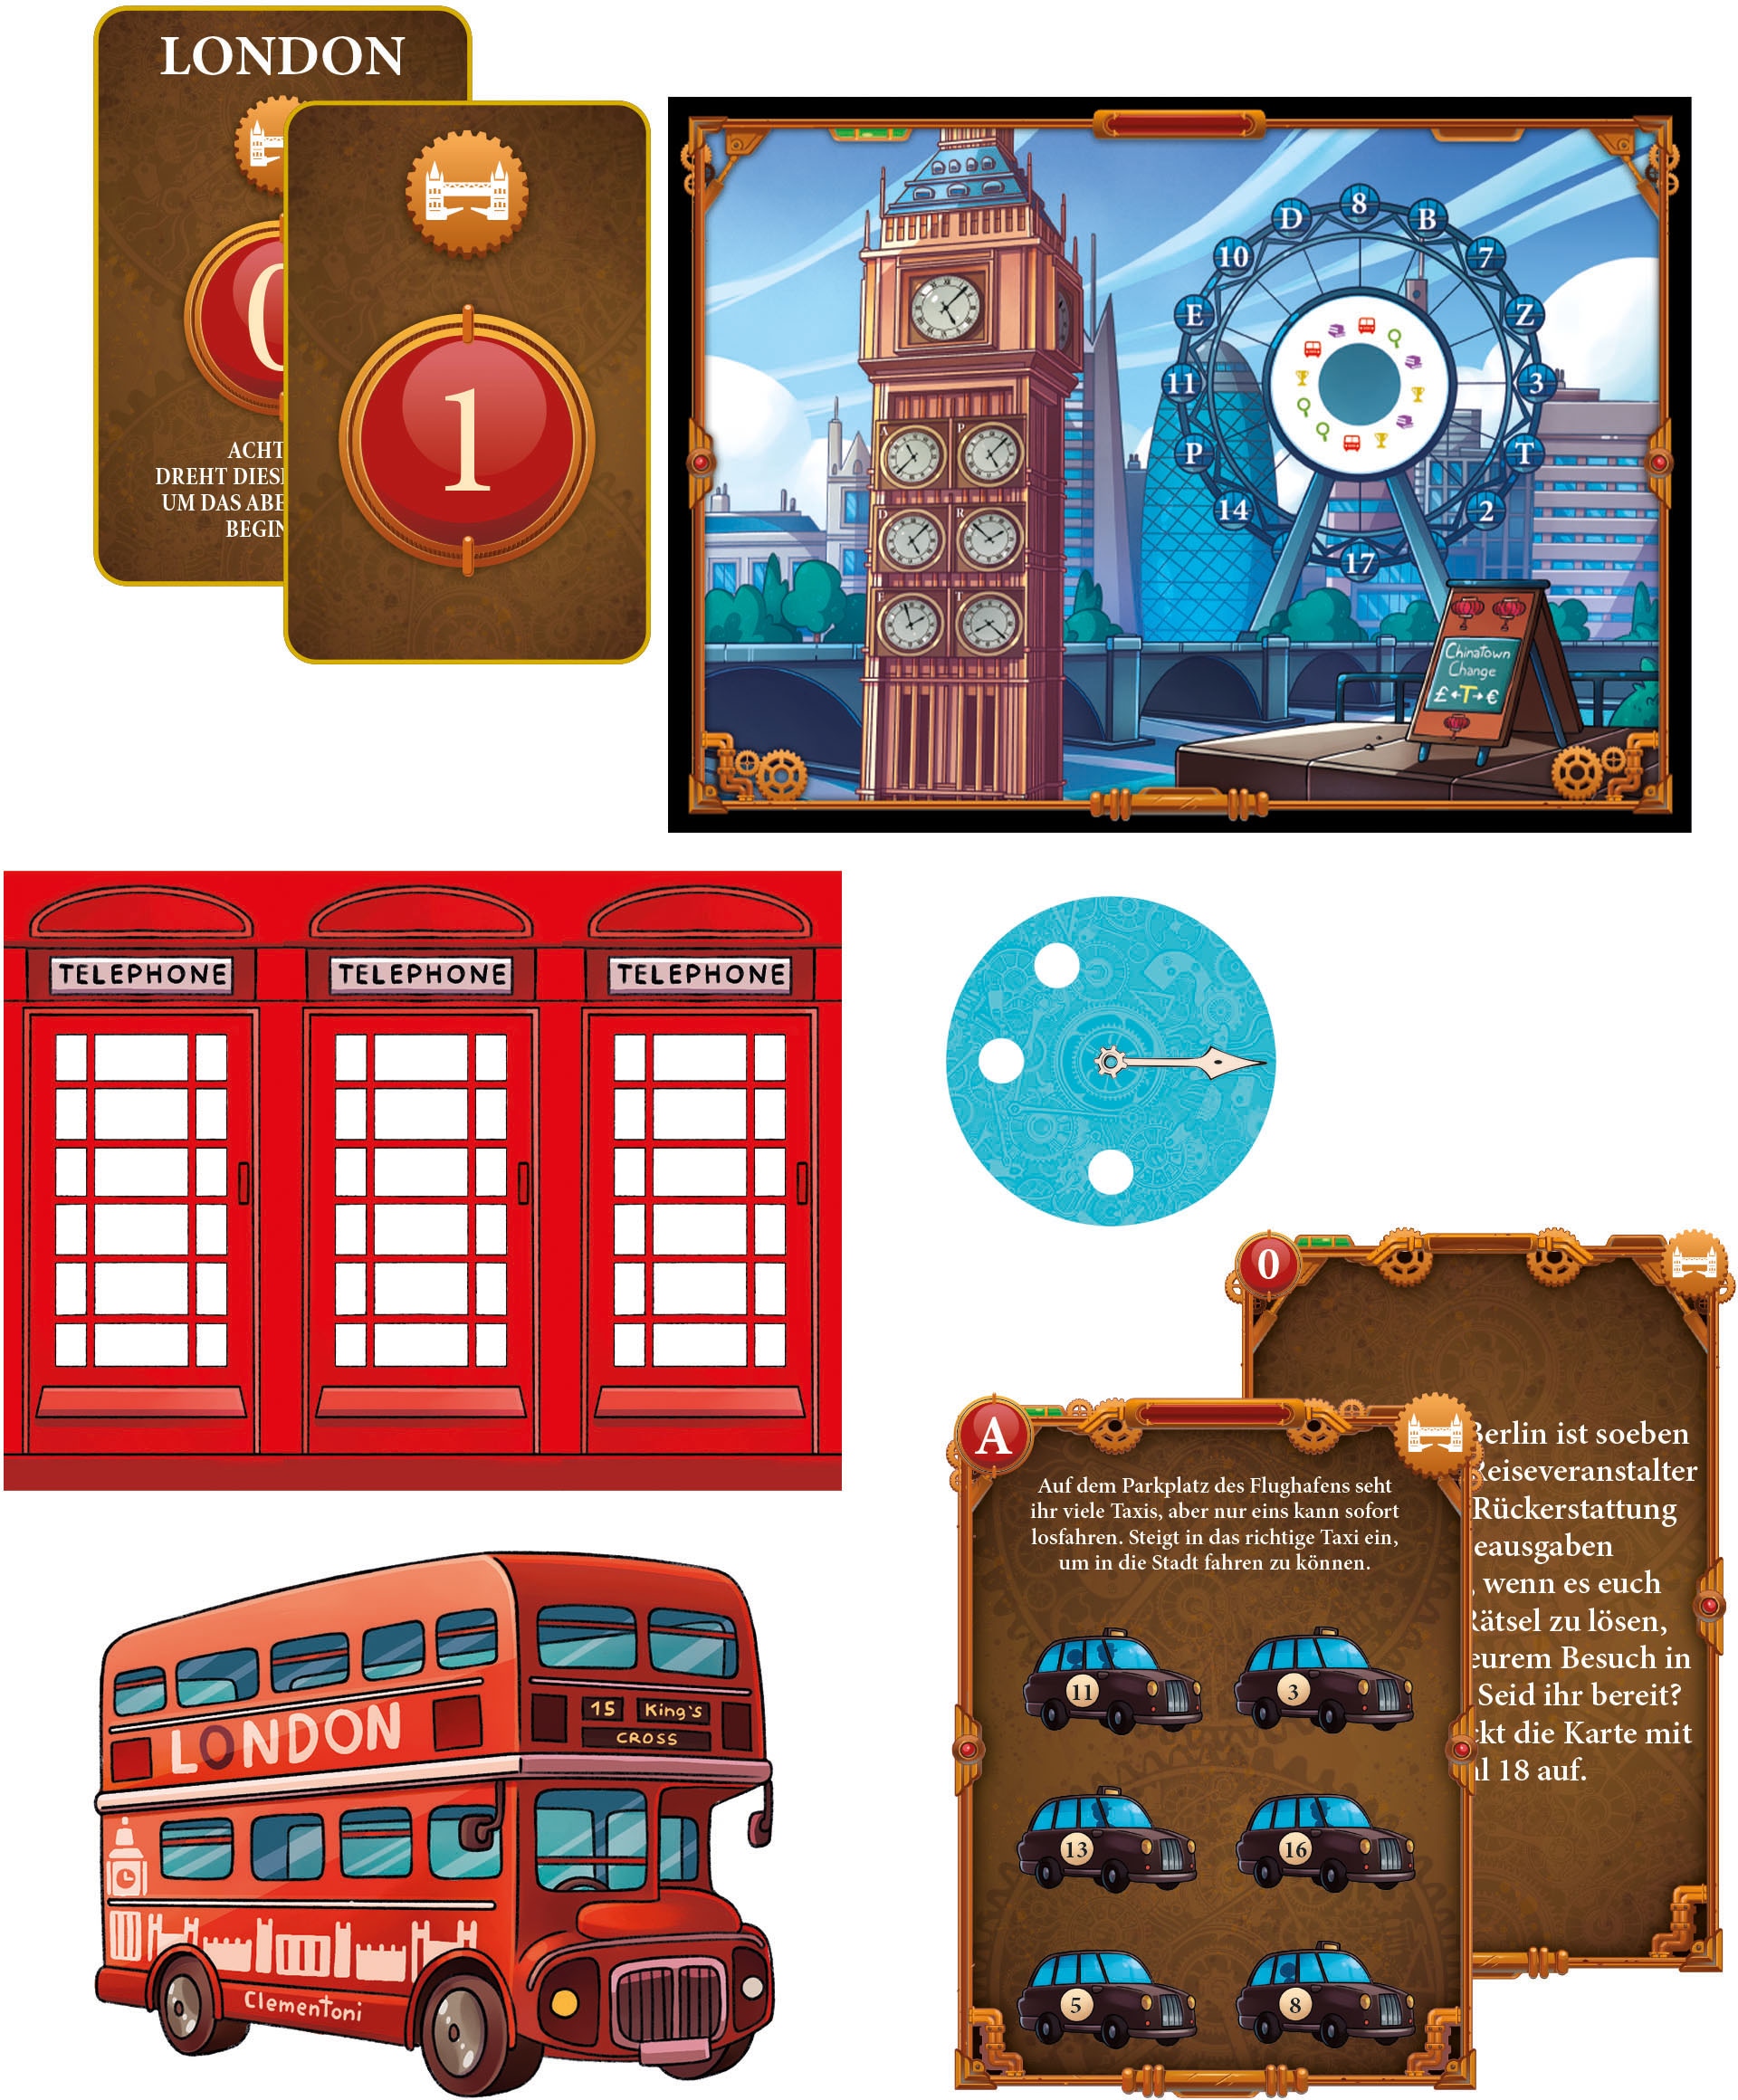 Clementoni® Spiel »Galileo, Escape Game Abenteuer in London«, Made in Europe, FSC® - schützt Wald - weltweit